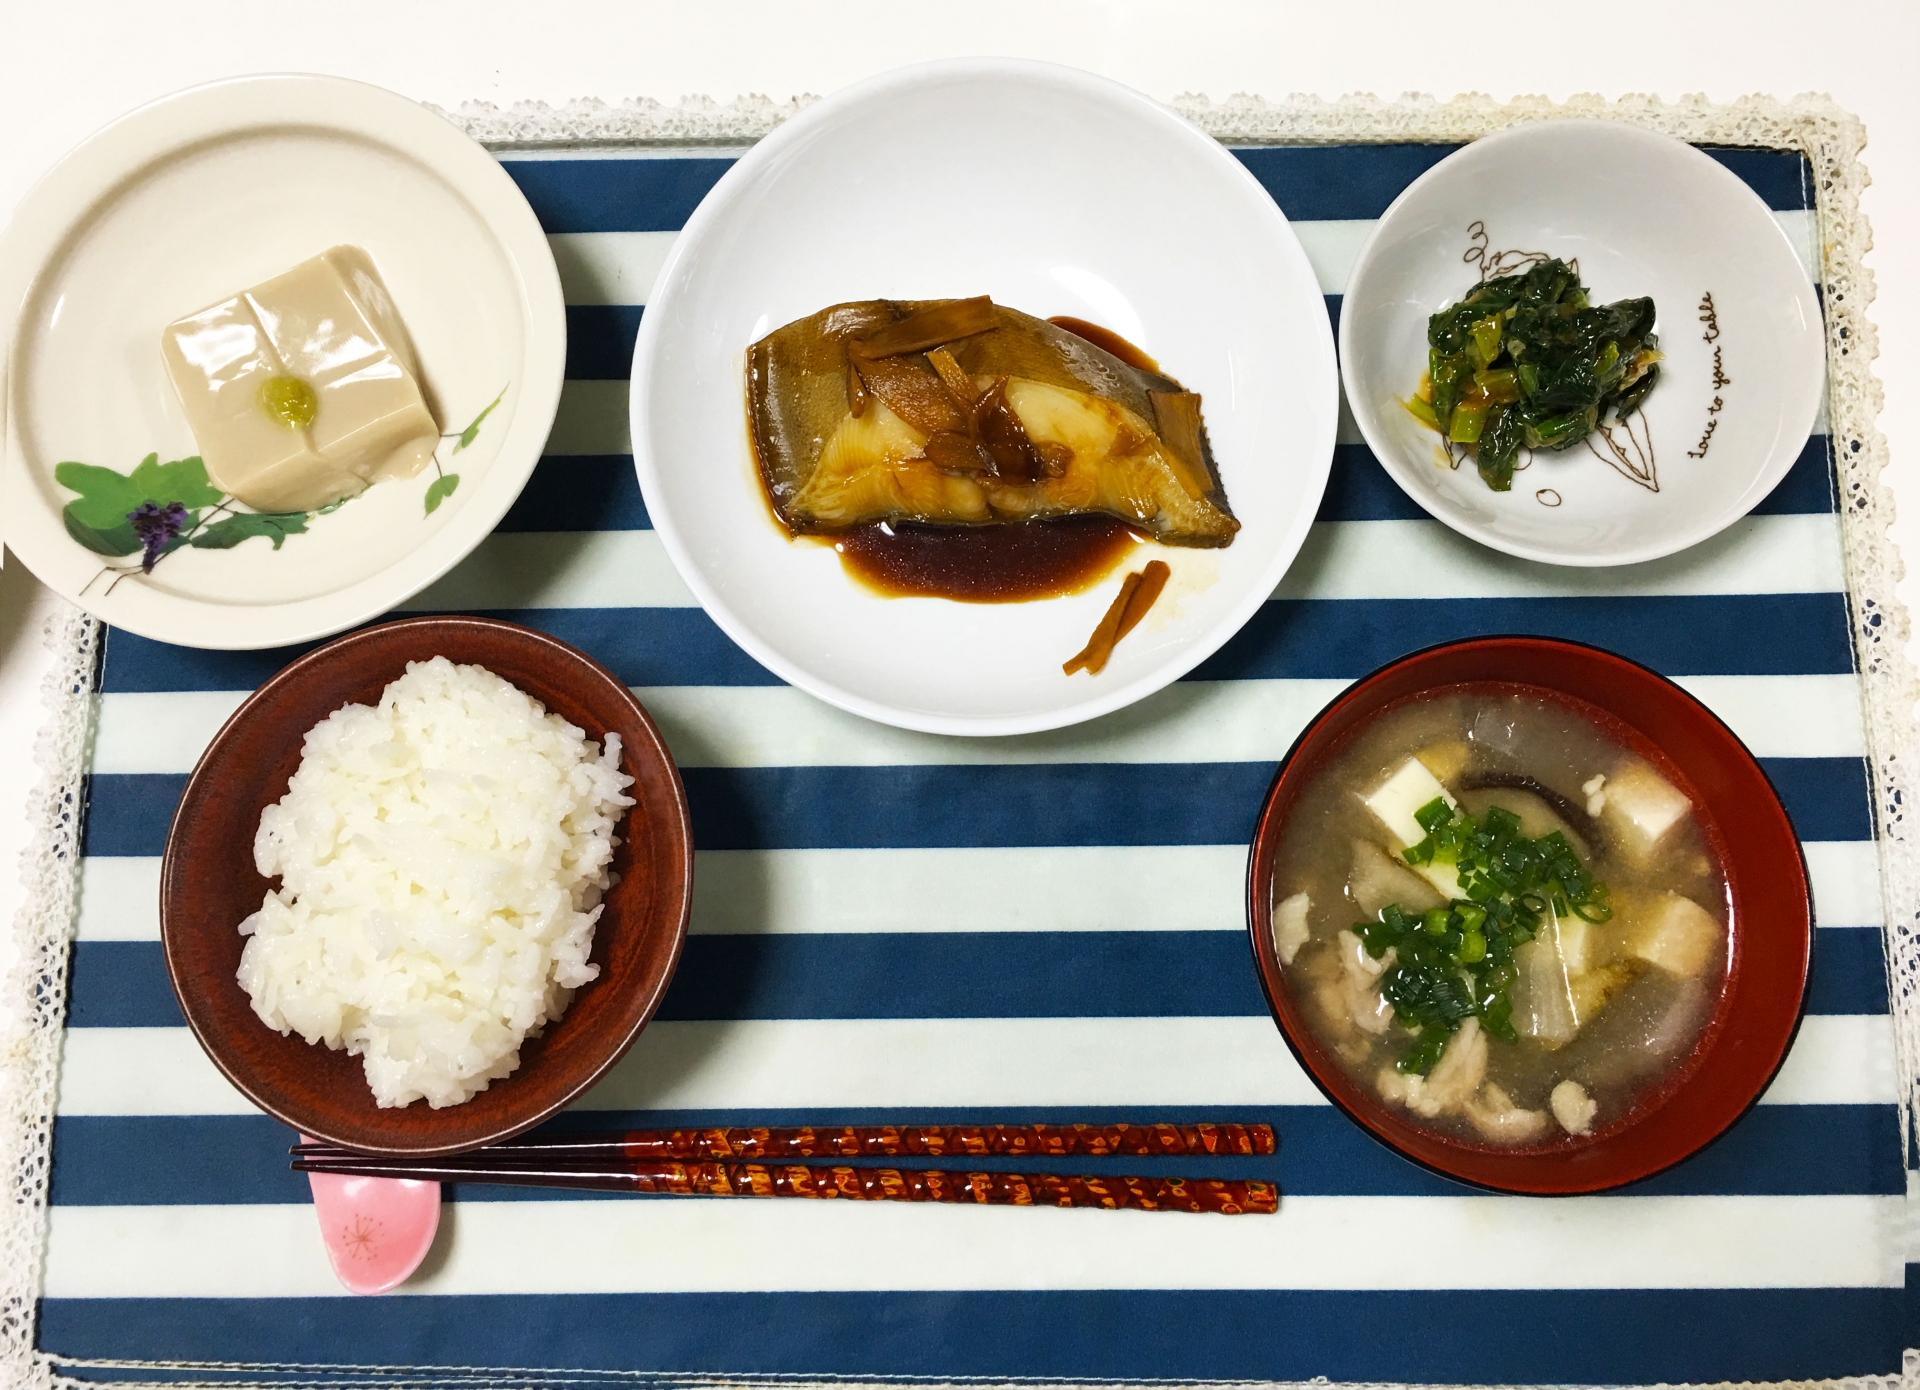 テーブルにのった食事の写真。食卓にはカレイの煮付けやごま豆腐、みそ汁、白米などバランスの良い食事が並んでいる